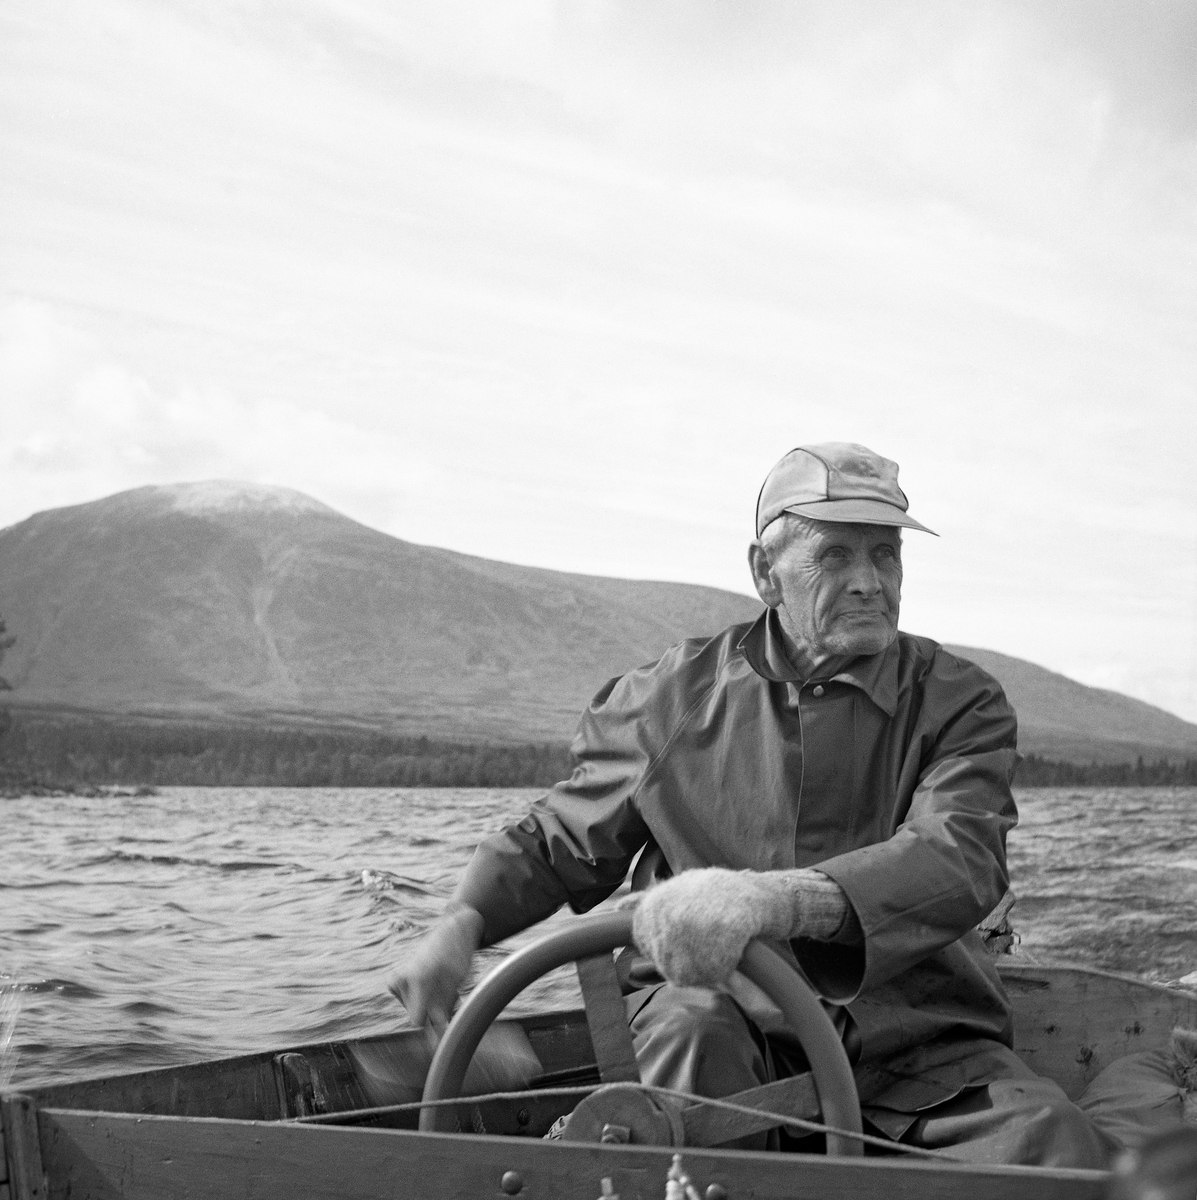 Ole Haagensen Nordseth (1887-1972) – også kalt «Nygardsen» - fordi han fra 1914 eide og drev eiendommen Nygard Nordset i Øvre Rendalen i Hedmark.  Nygardsen markerte seg også som en av de dyktigste og mest aktive fiskerne i Sølensjøen, i fjelltraktene tre mil øst for hovedbygda.  Det er i dette miljøet dette fotografiet av Nygardsen er tatt.  Han portrettert sittende i akterenden av motorbåten sin, «Sølen II», som hadde innenbordsmotor fra brødrene Øveraasens motorfabrik & mekaniske verksted på Gjøvik.  Nygardsen er fotografert sittende med handa på rattet.  Han hadde ei vind- eller regnjakke på overkroppen og ei skyggelue på hodet.  Nygardsen hadde strikkevotter på hendene. 